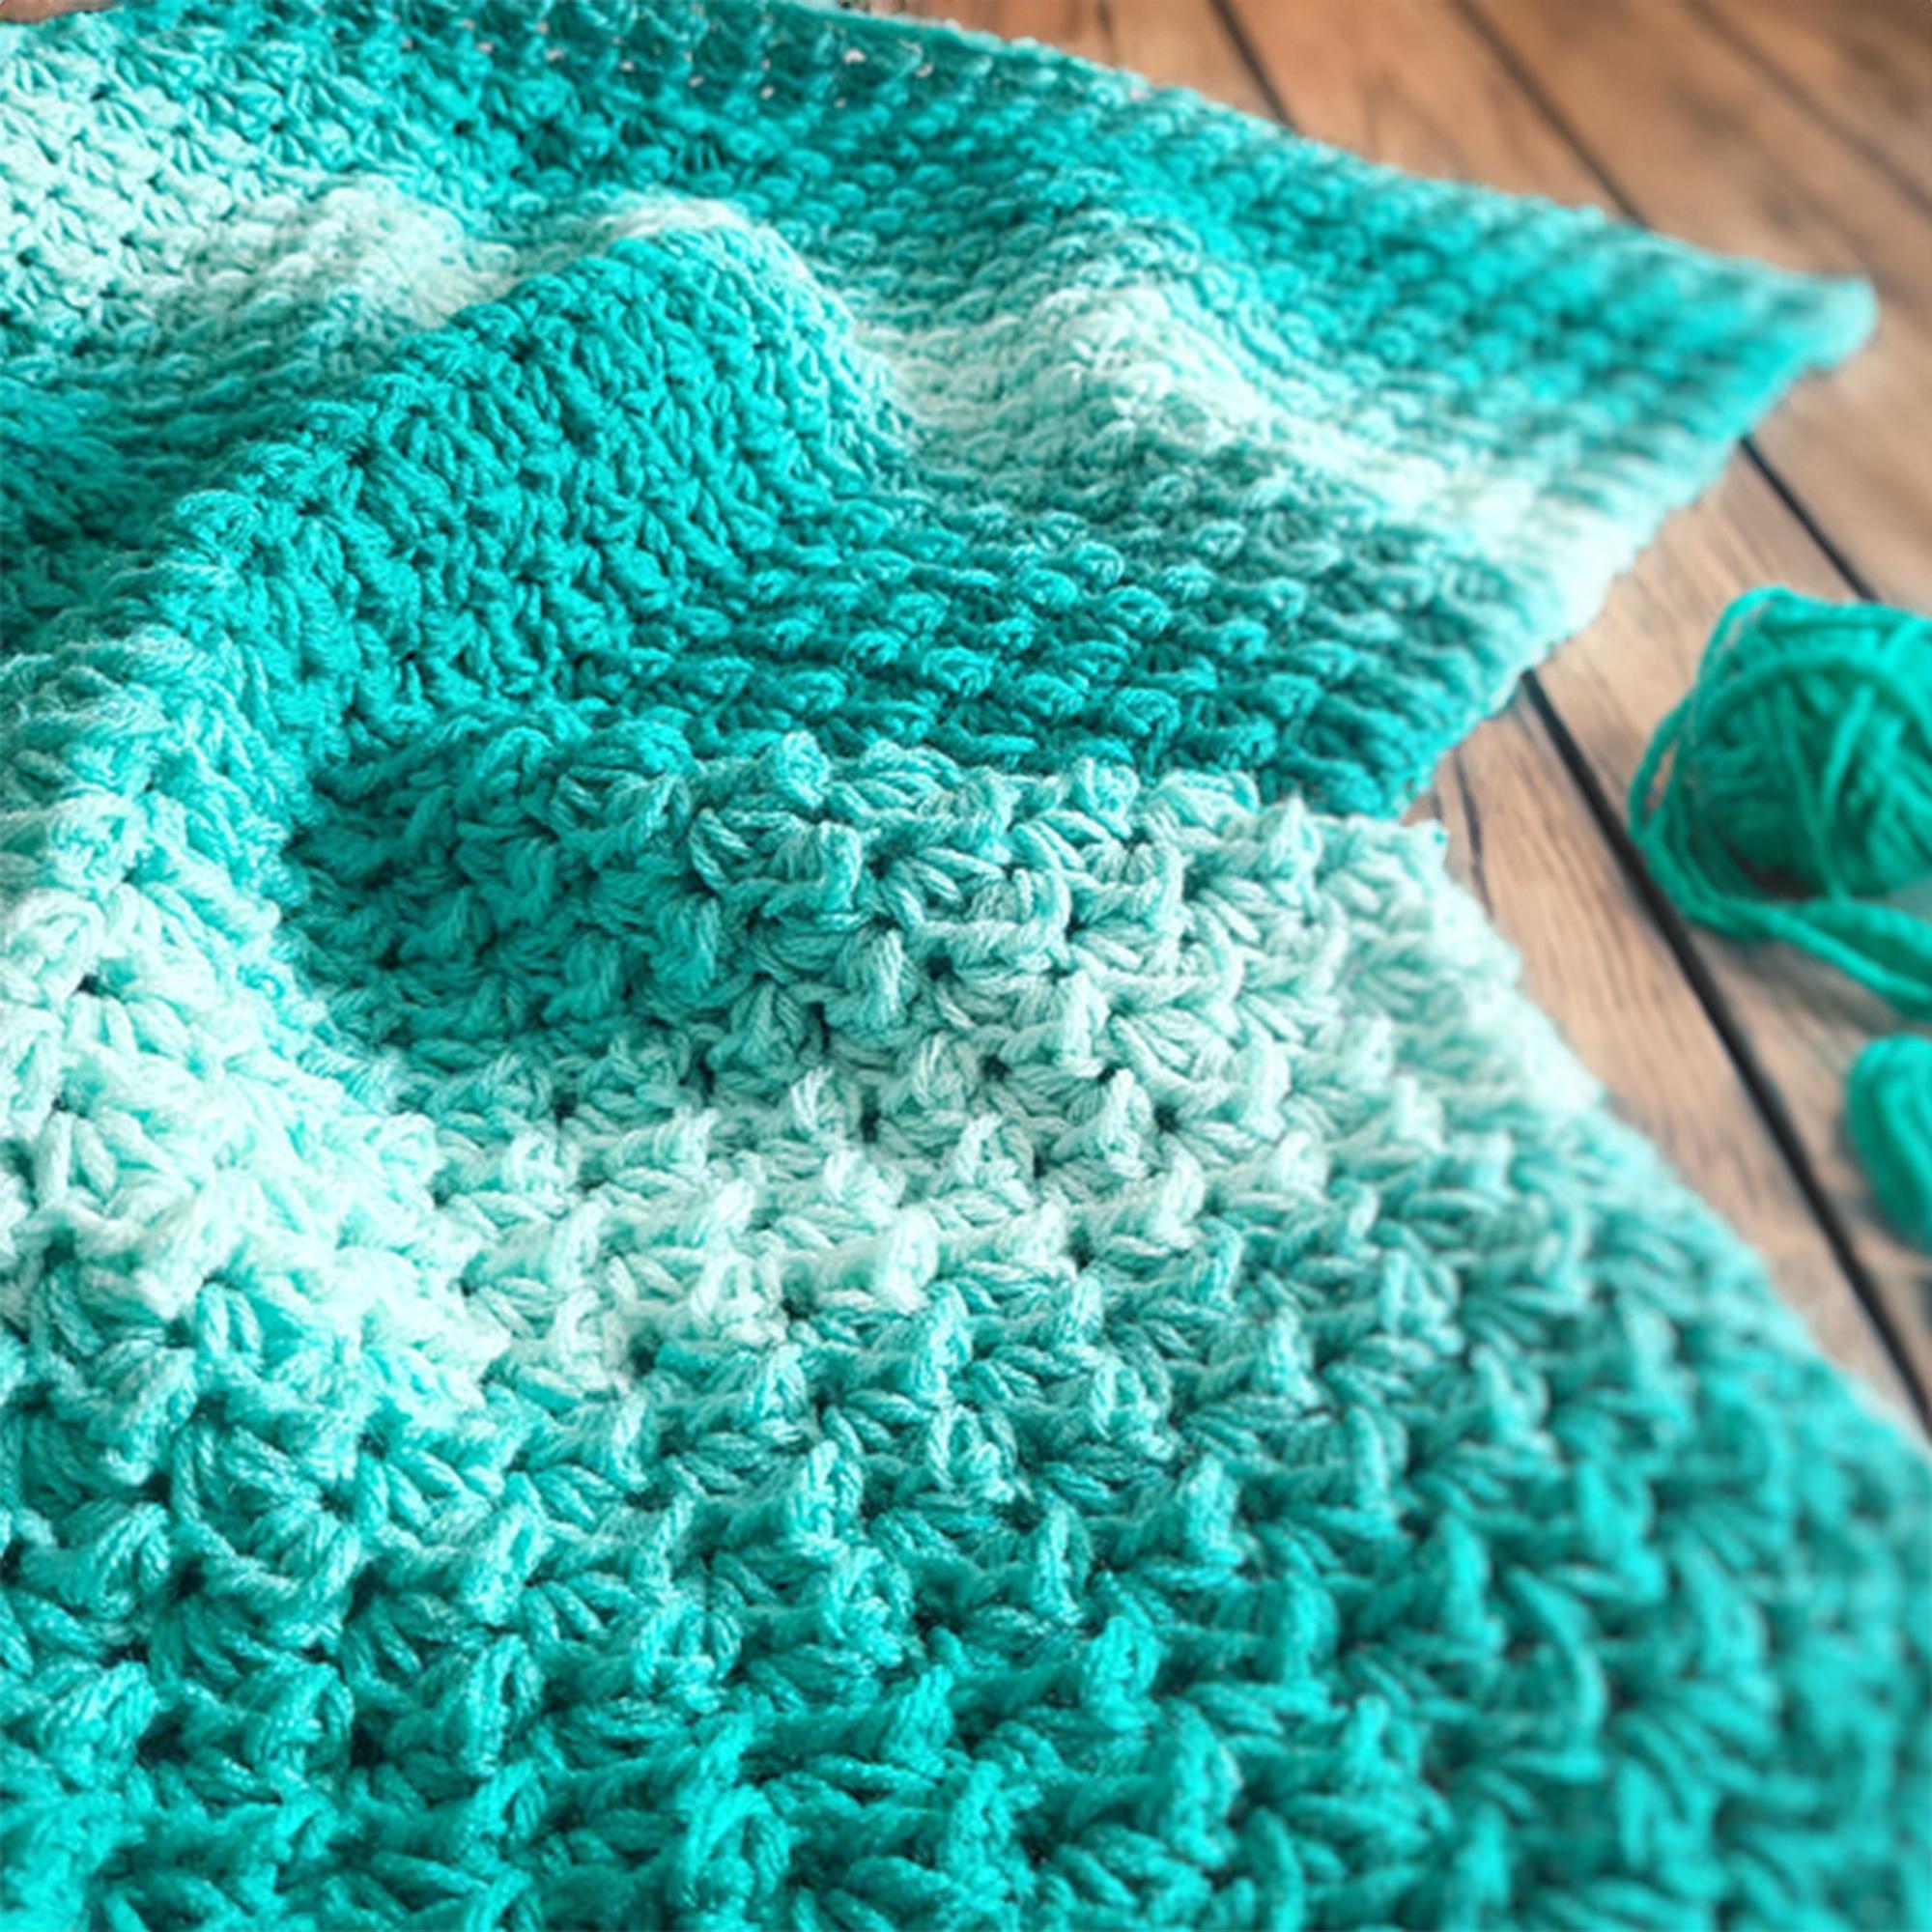 Emerald Waves Snuggle Blanket